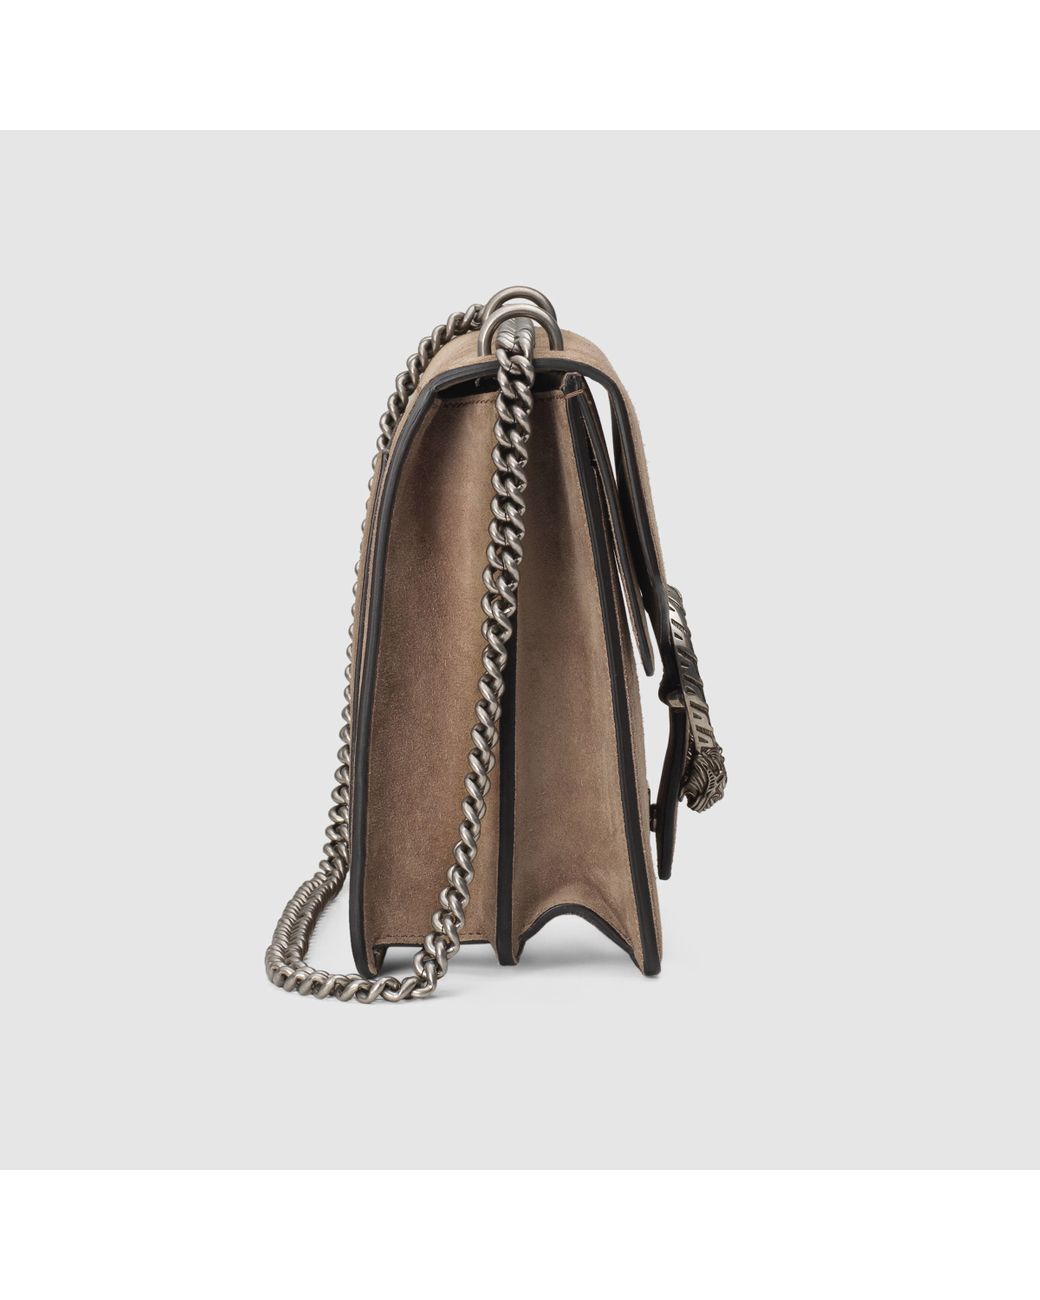 Dionysus Medium bag in brown suede Gucci - Second Hand / Used – Vintega